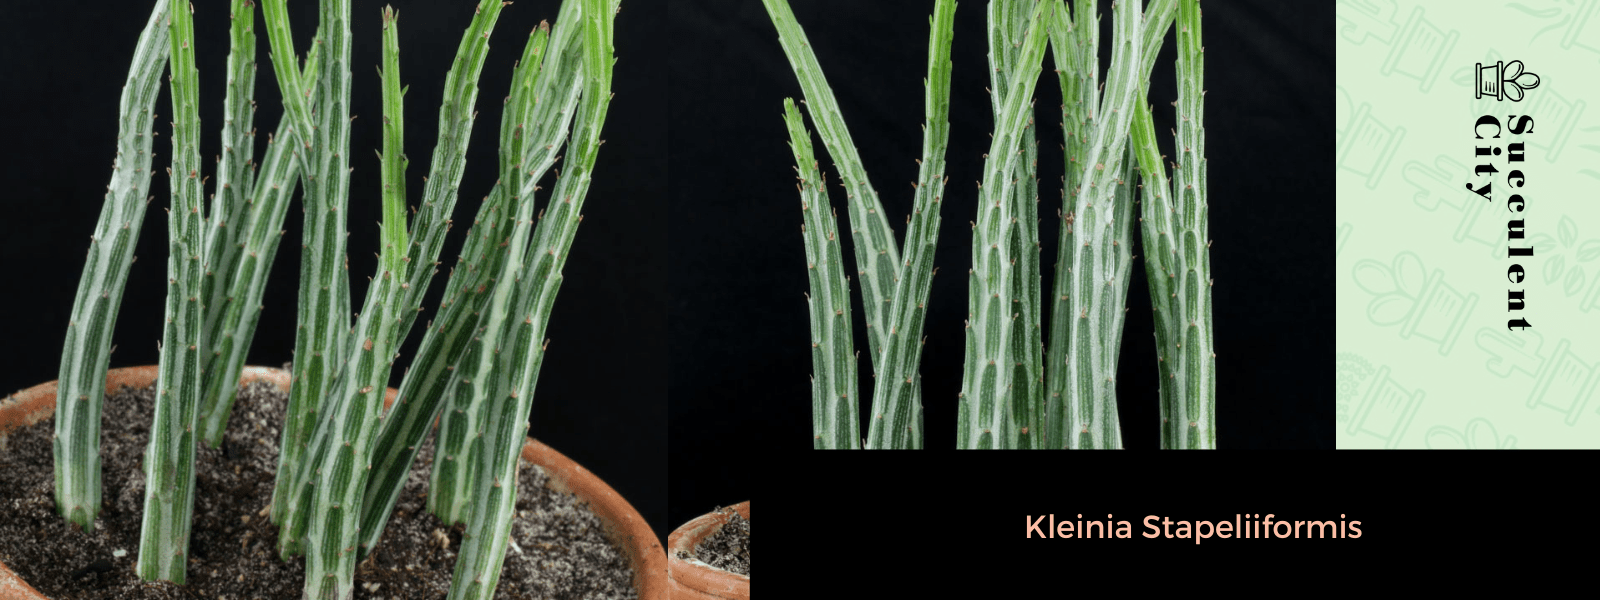 La planta del pepino “Senecio Stapeliiformis” (Kleinia Stapeliiformis)